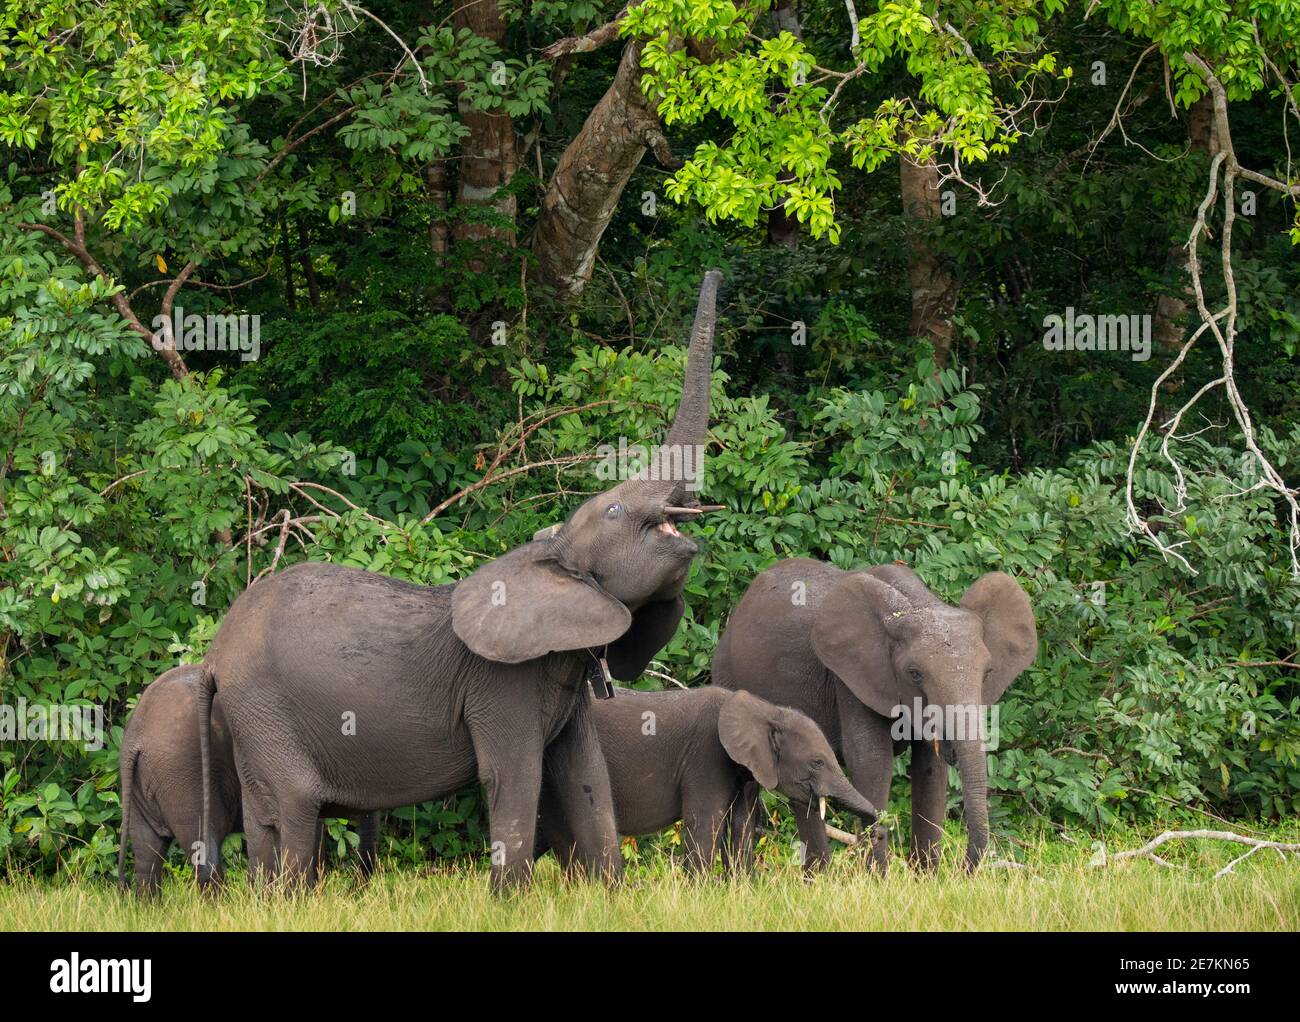 Elefante della foresta africana (Loxodonta cyclotis), che utilizza il tronco per raggiungere le foglie sull'albero, Loango National Park, Gabon, Africa centrale. Foto Stock